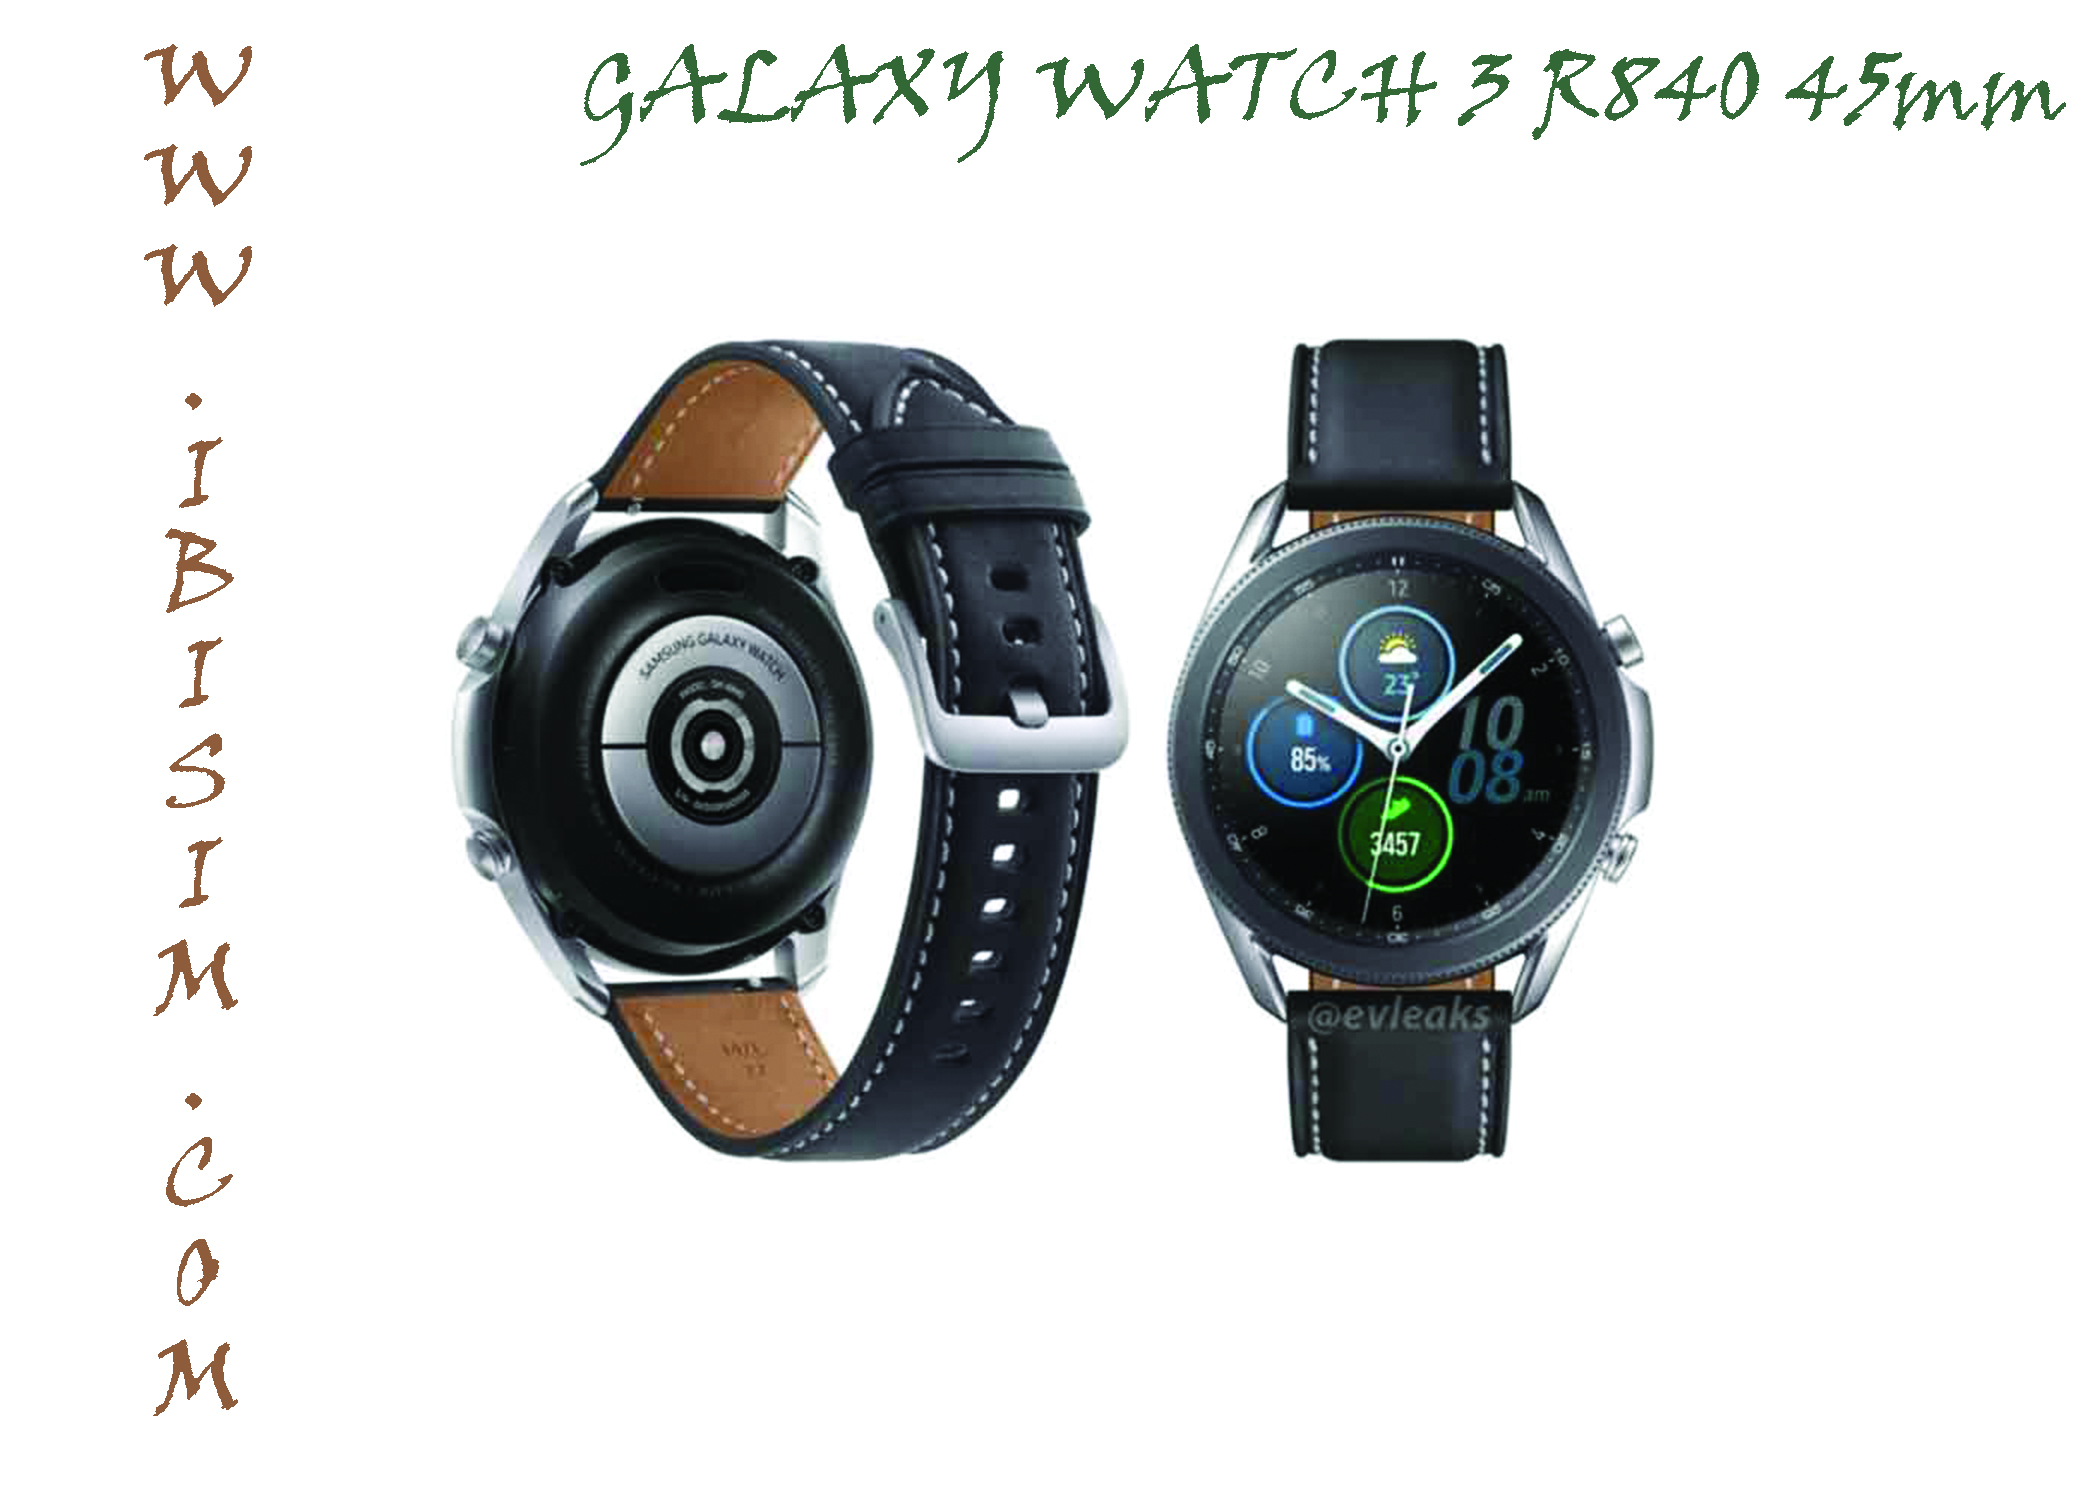 Samsung Watch 3 R840